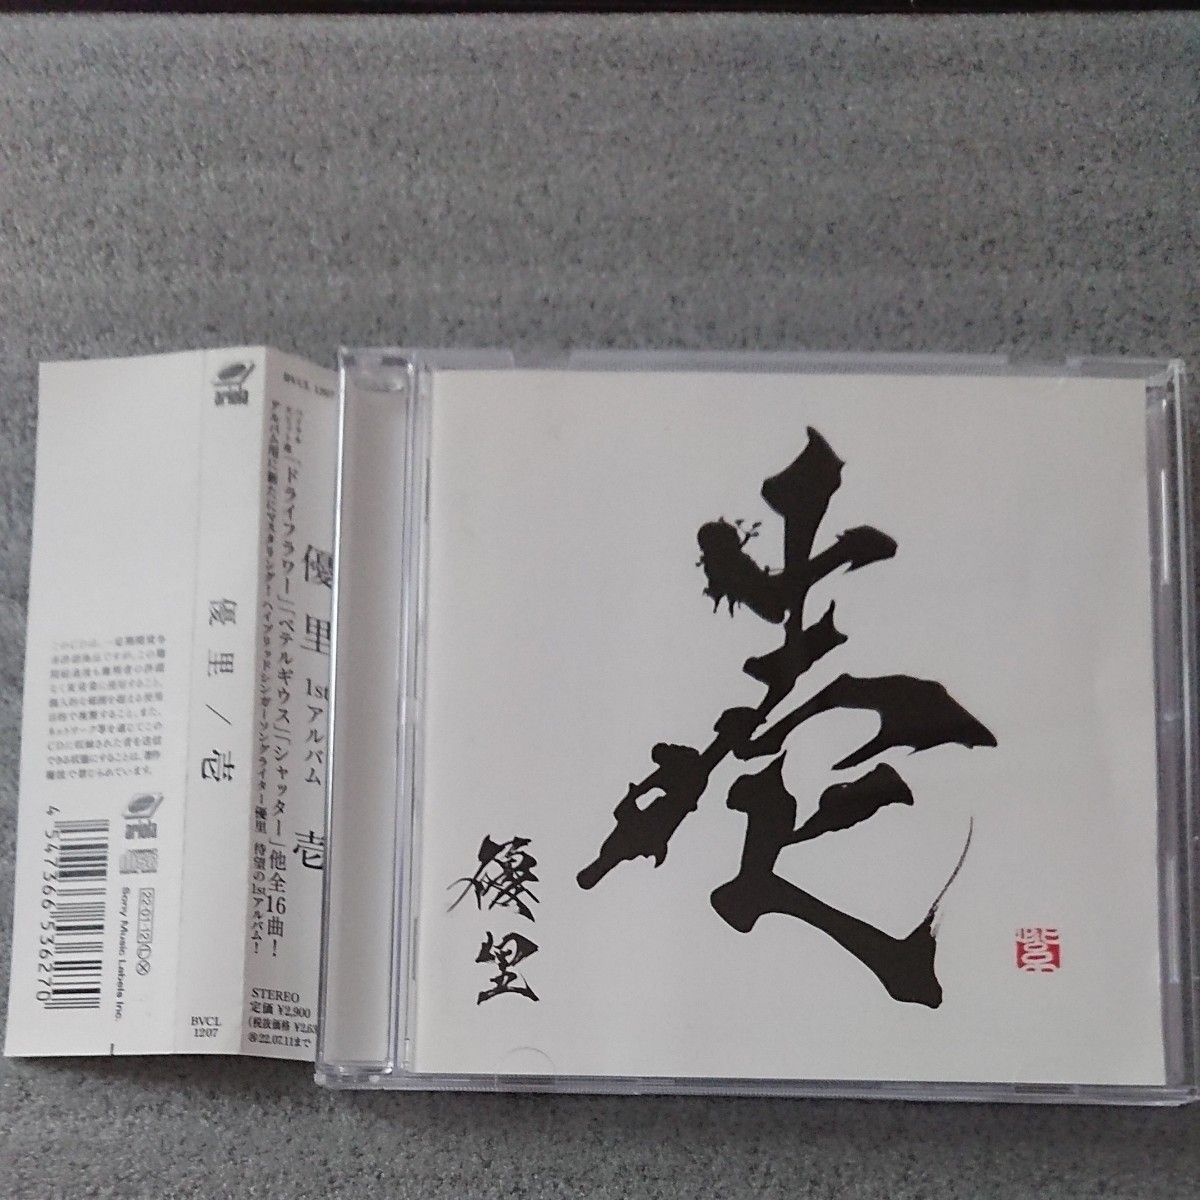 優里 壱 1stアルバム イチ ドライフラワー ベテルギウス かくれんぼ  結婚式  ウェディング  CD 通常盤